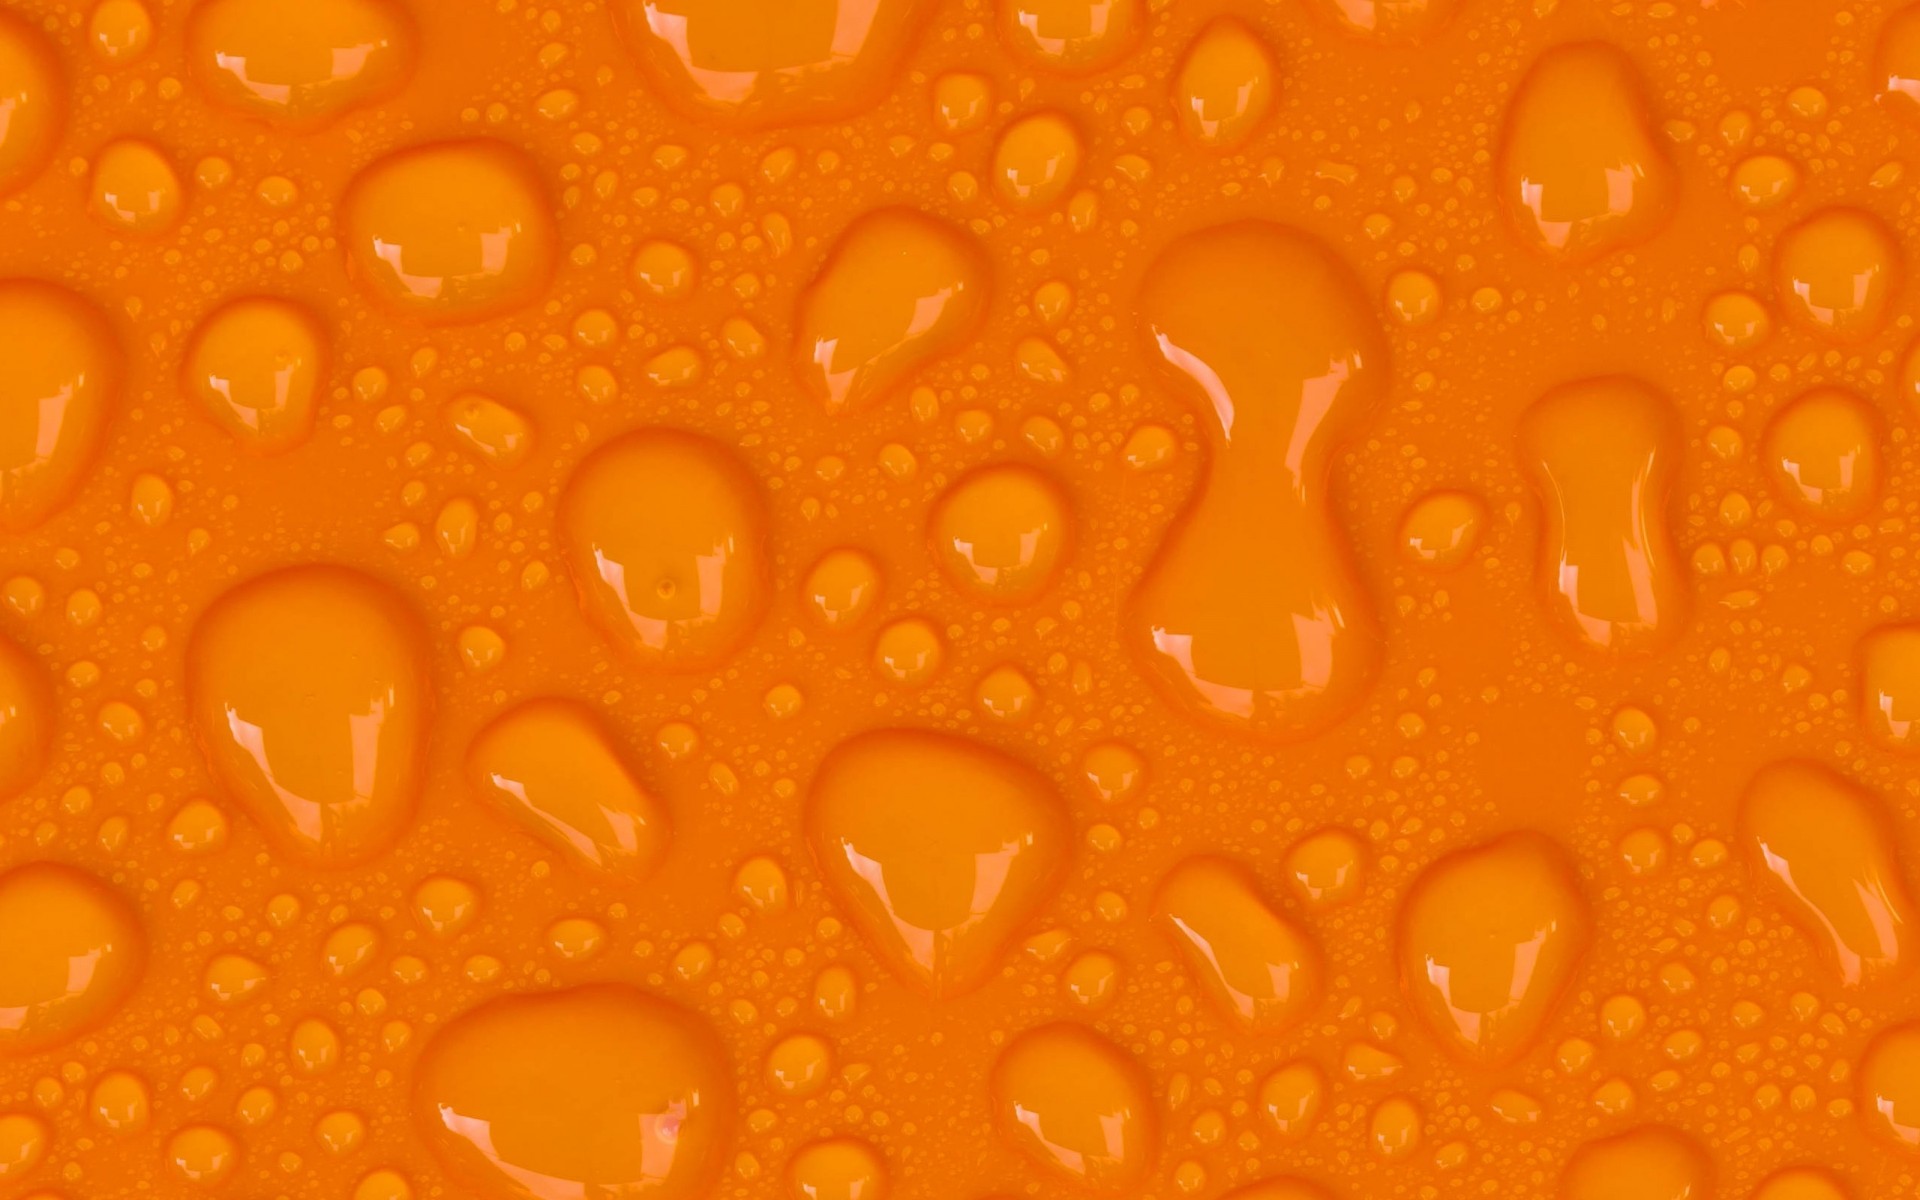 wallpaper laranja,orange,yellow,water,pattern,design